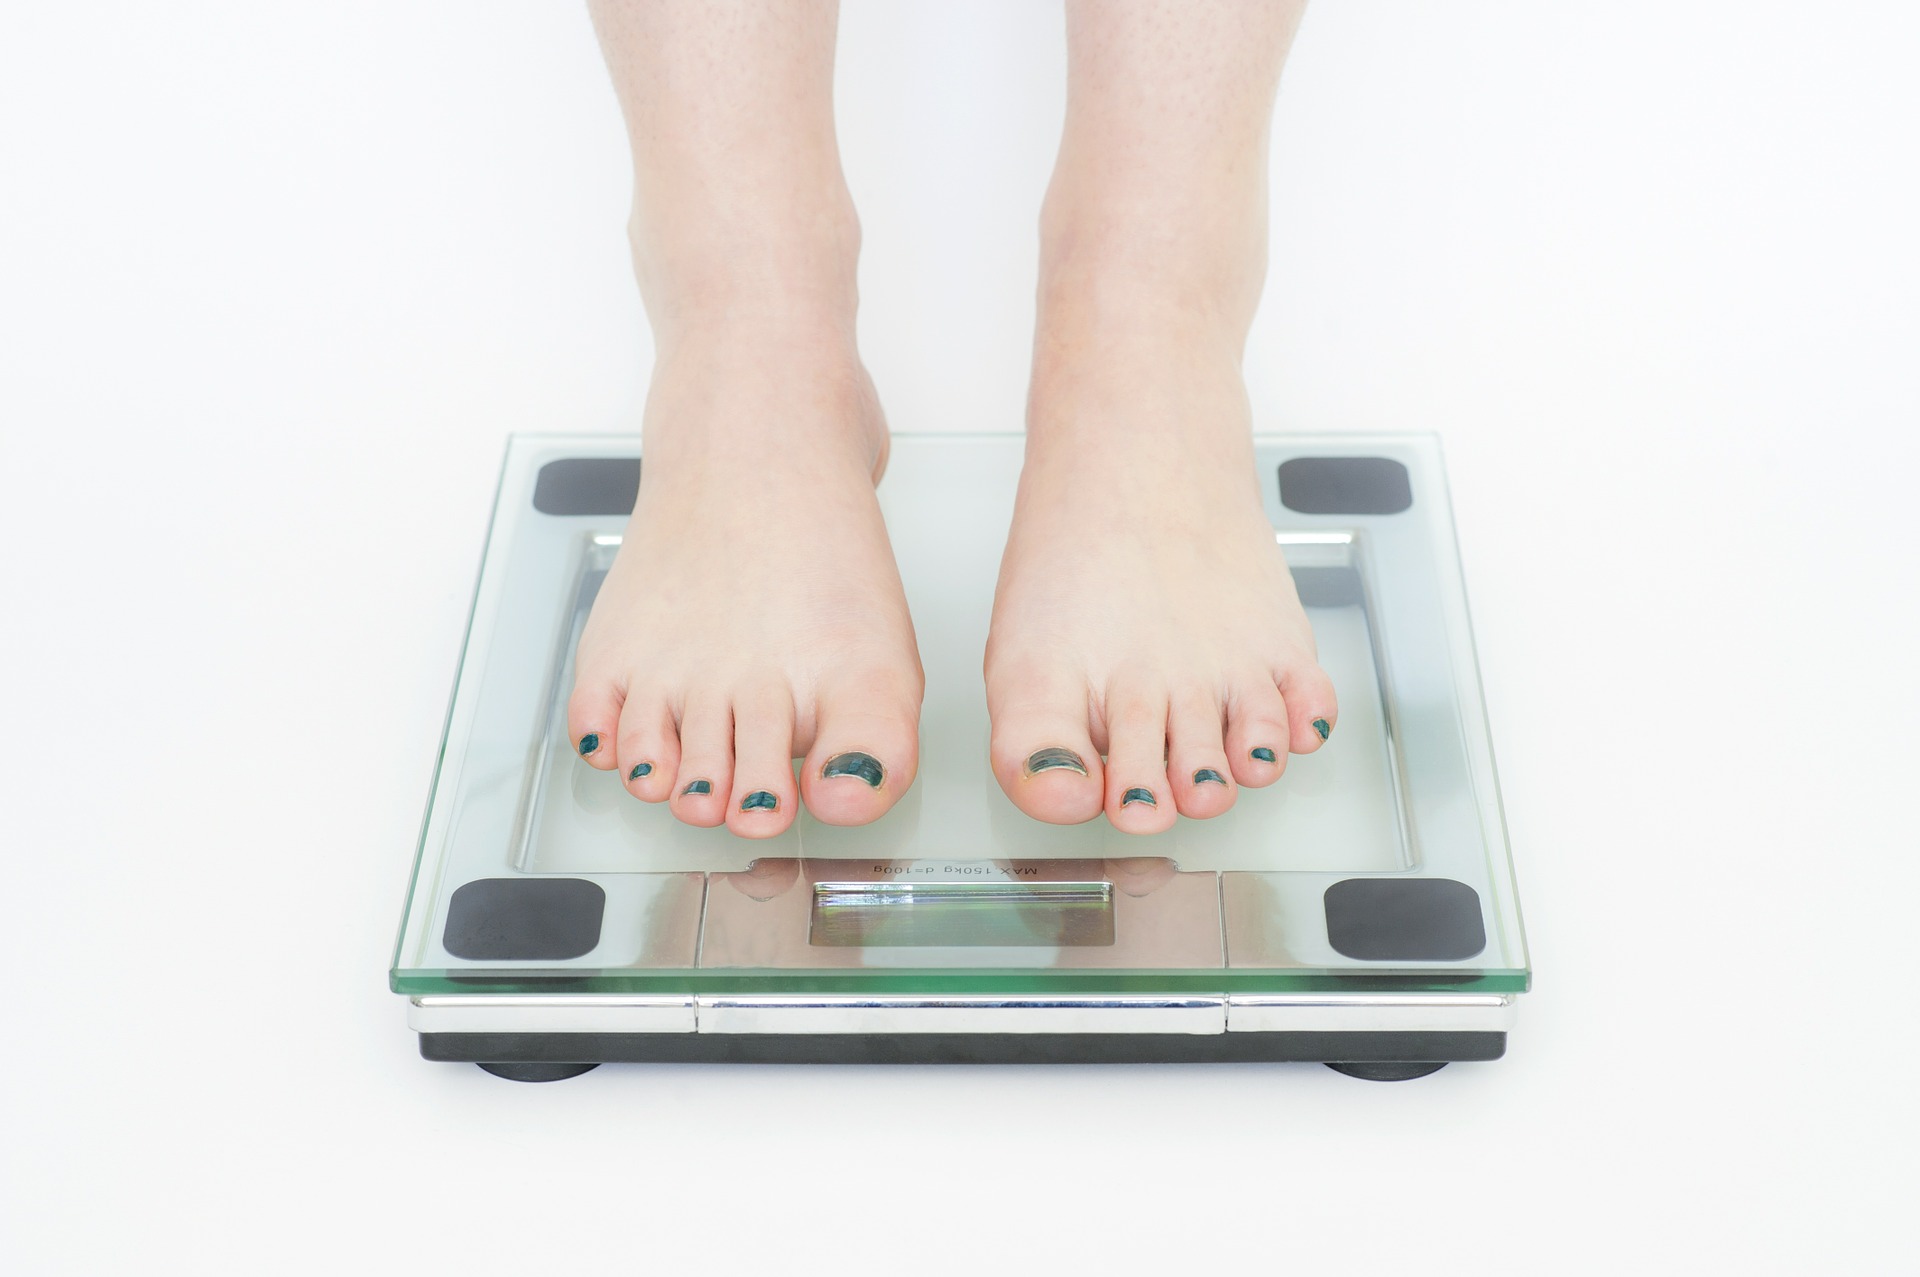 Απώλεια βάρους χωρίς δίαιτα: 7 ανησυχητικές αιτίες